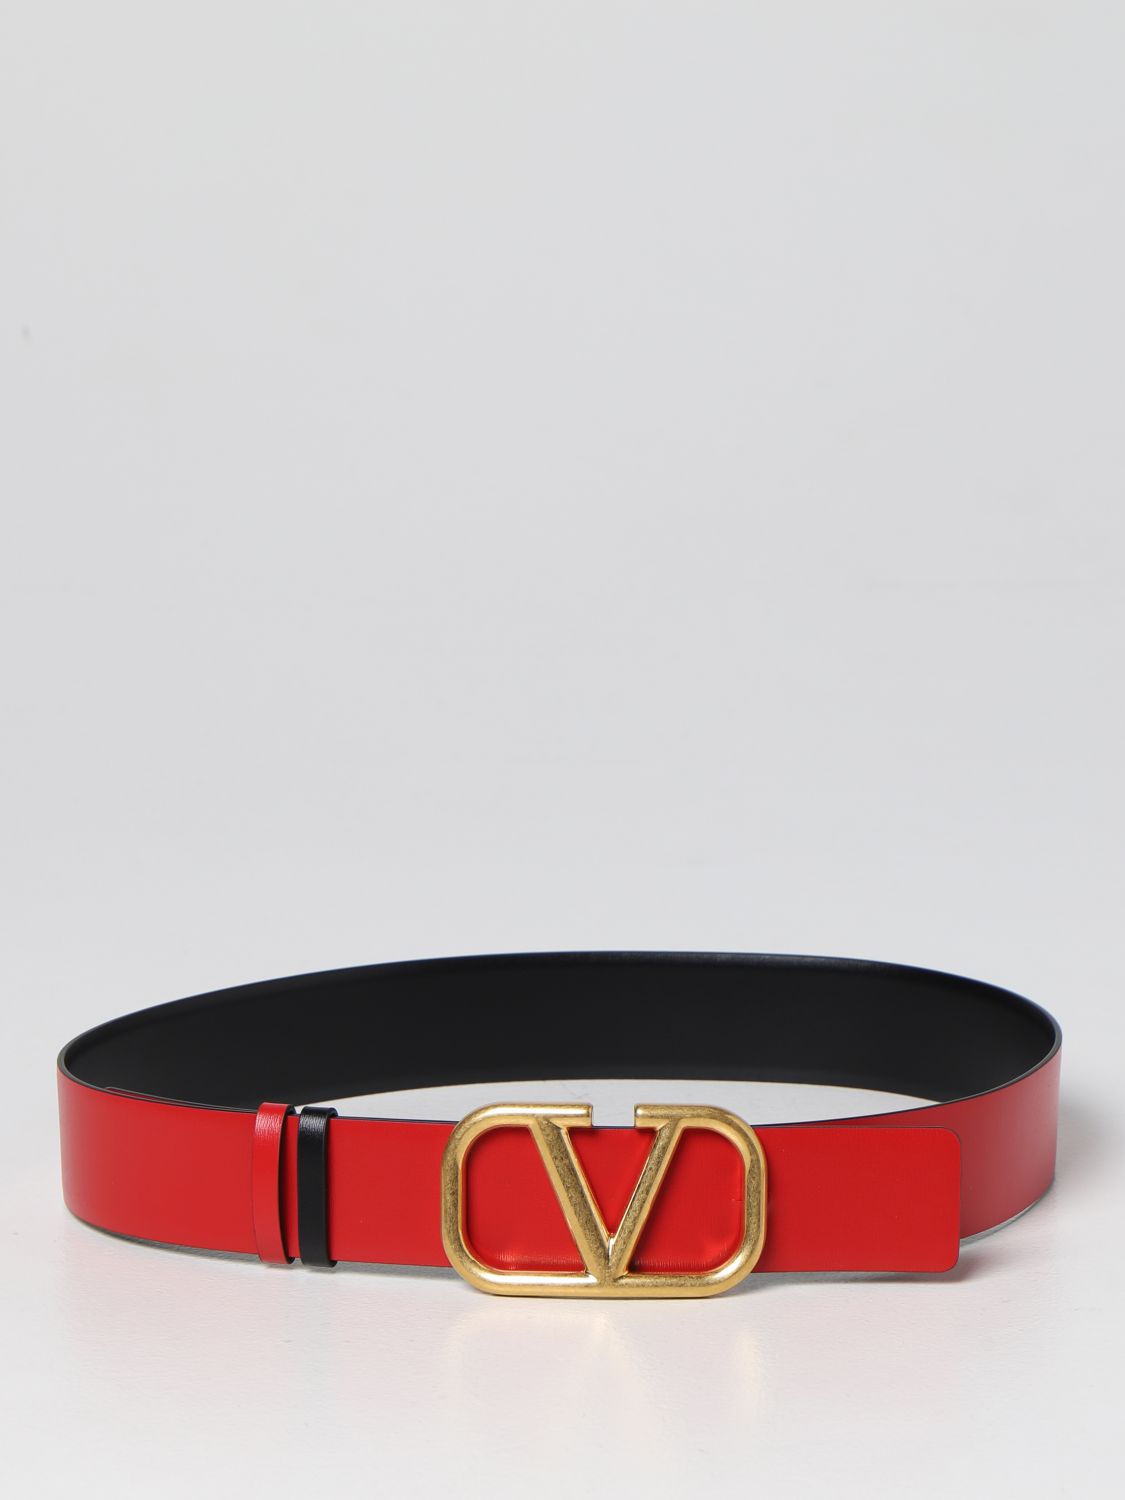 Valentino Garavani Outlet: VLogo leather belt - Black  Valentino Garavani  belt 2W2T0S10ZFR online at